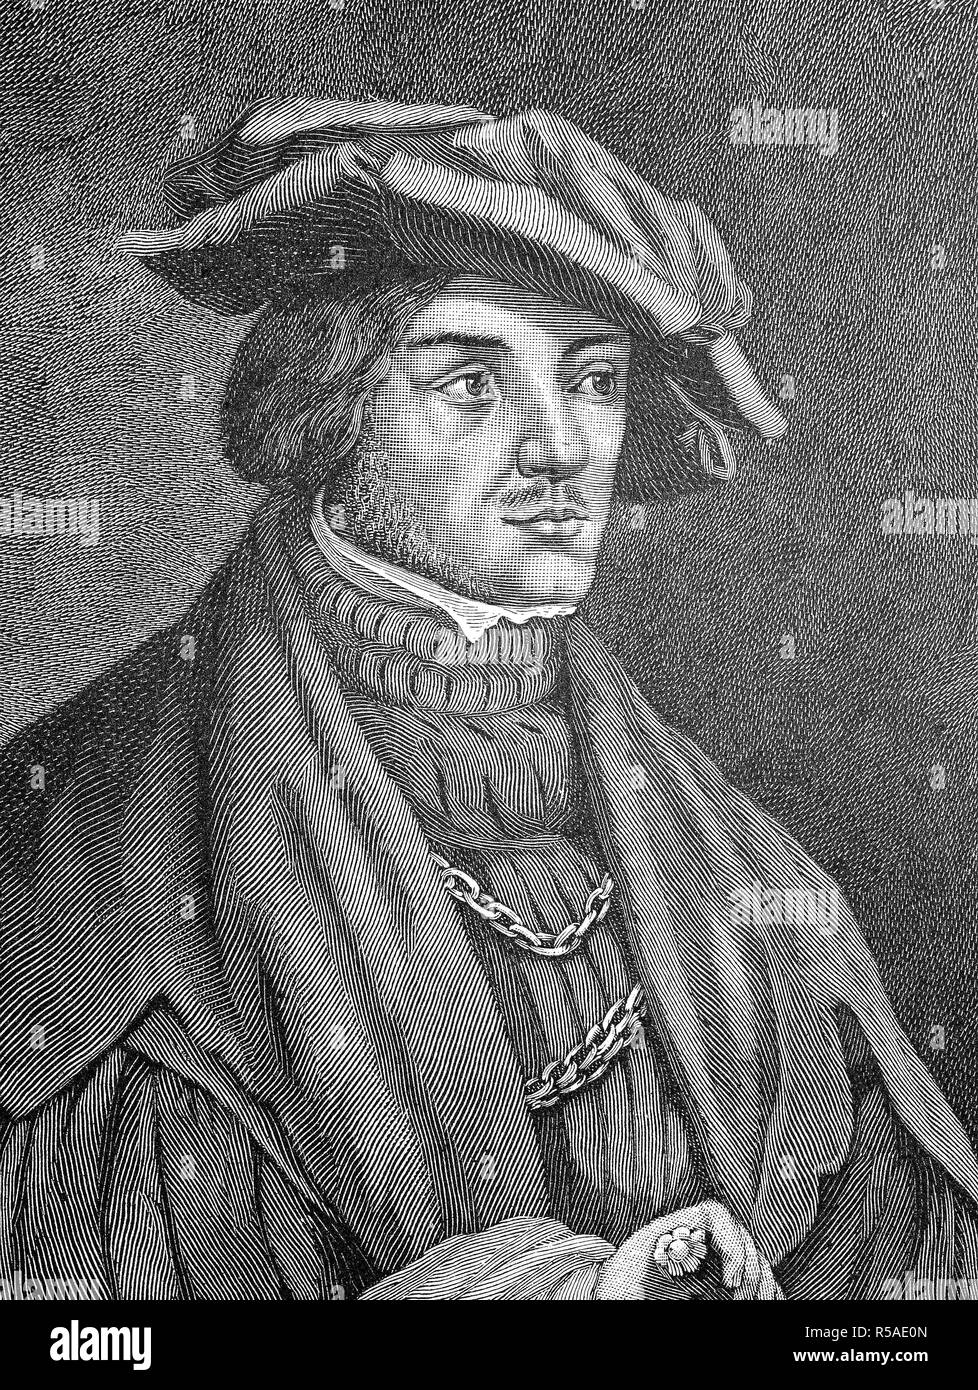 Ulrich von Hutten, 21 avril 1488, 29 août 1523, était un chercheur allemand, poète, satiriste et réformateur, gravure sur bois de l'année 1888 Banque D'Images